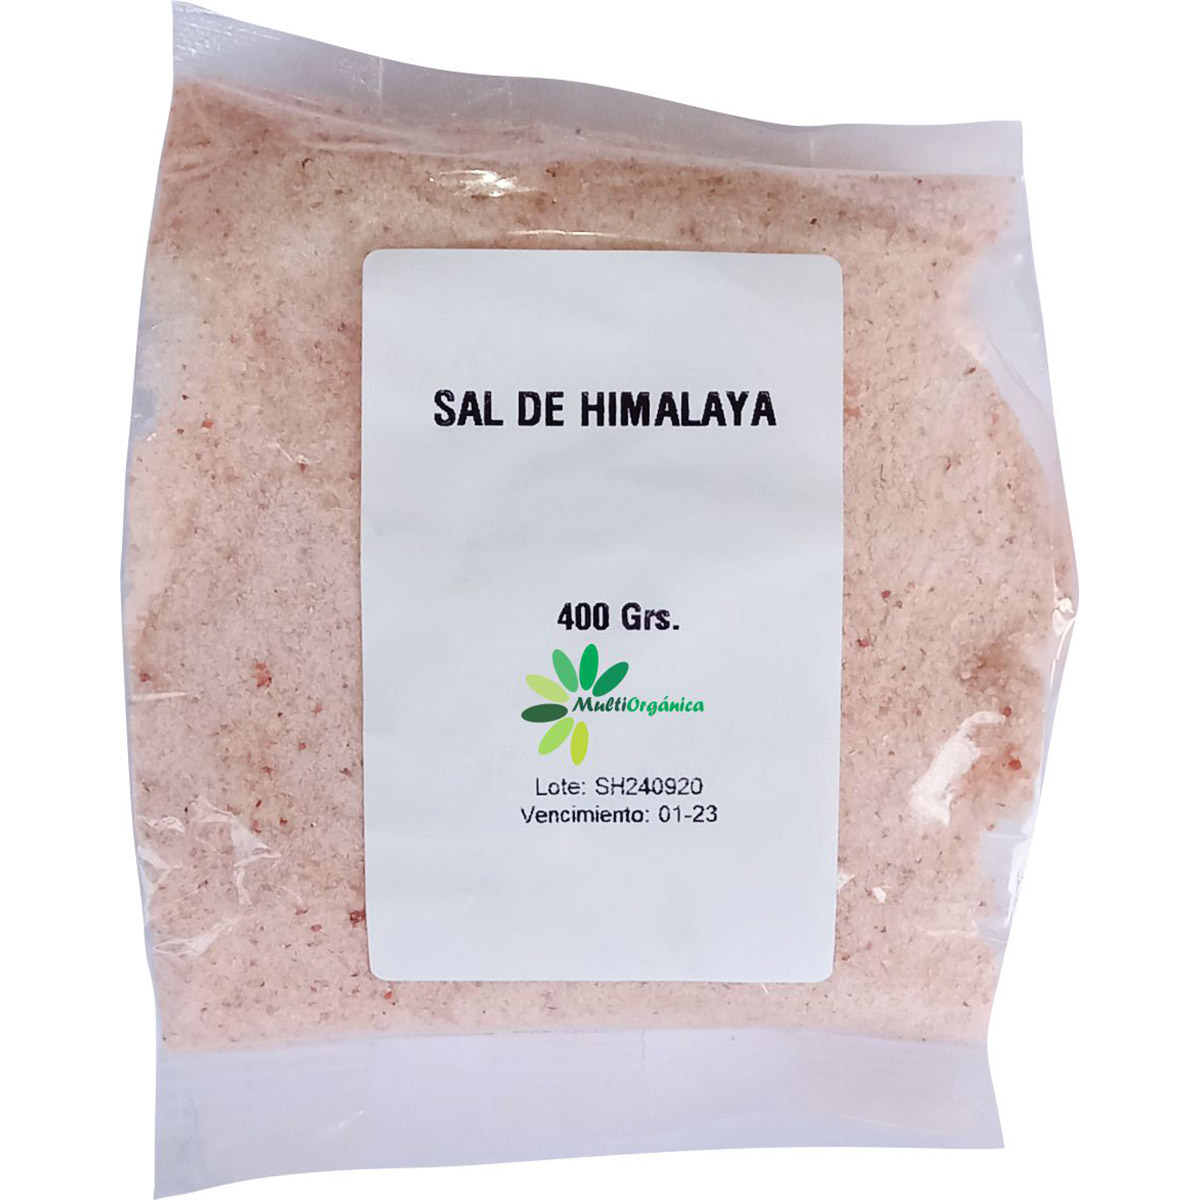 Comprá Sal Rosada Fina del Himalaya x 1 kg